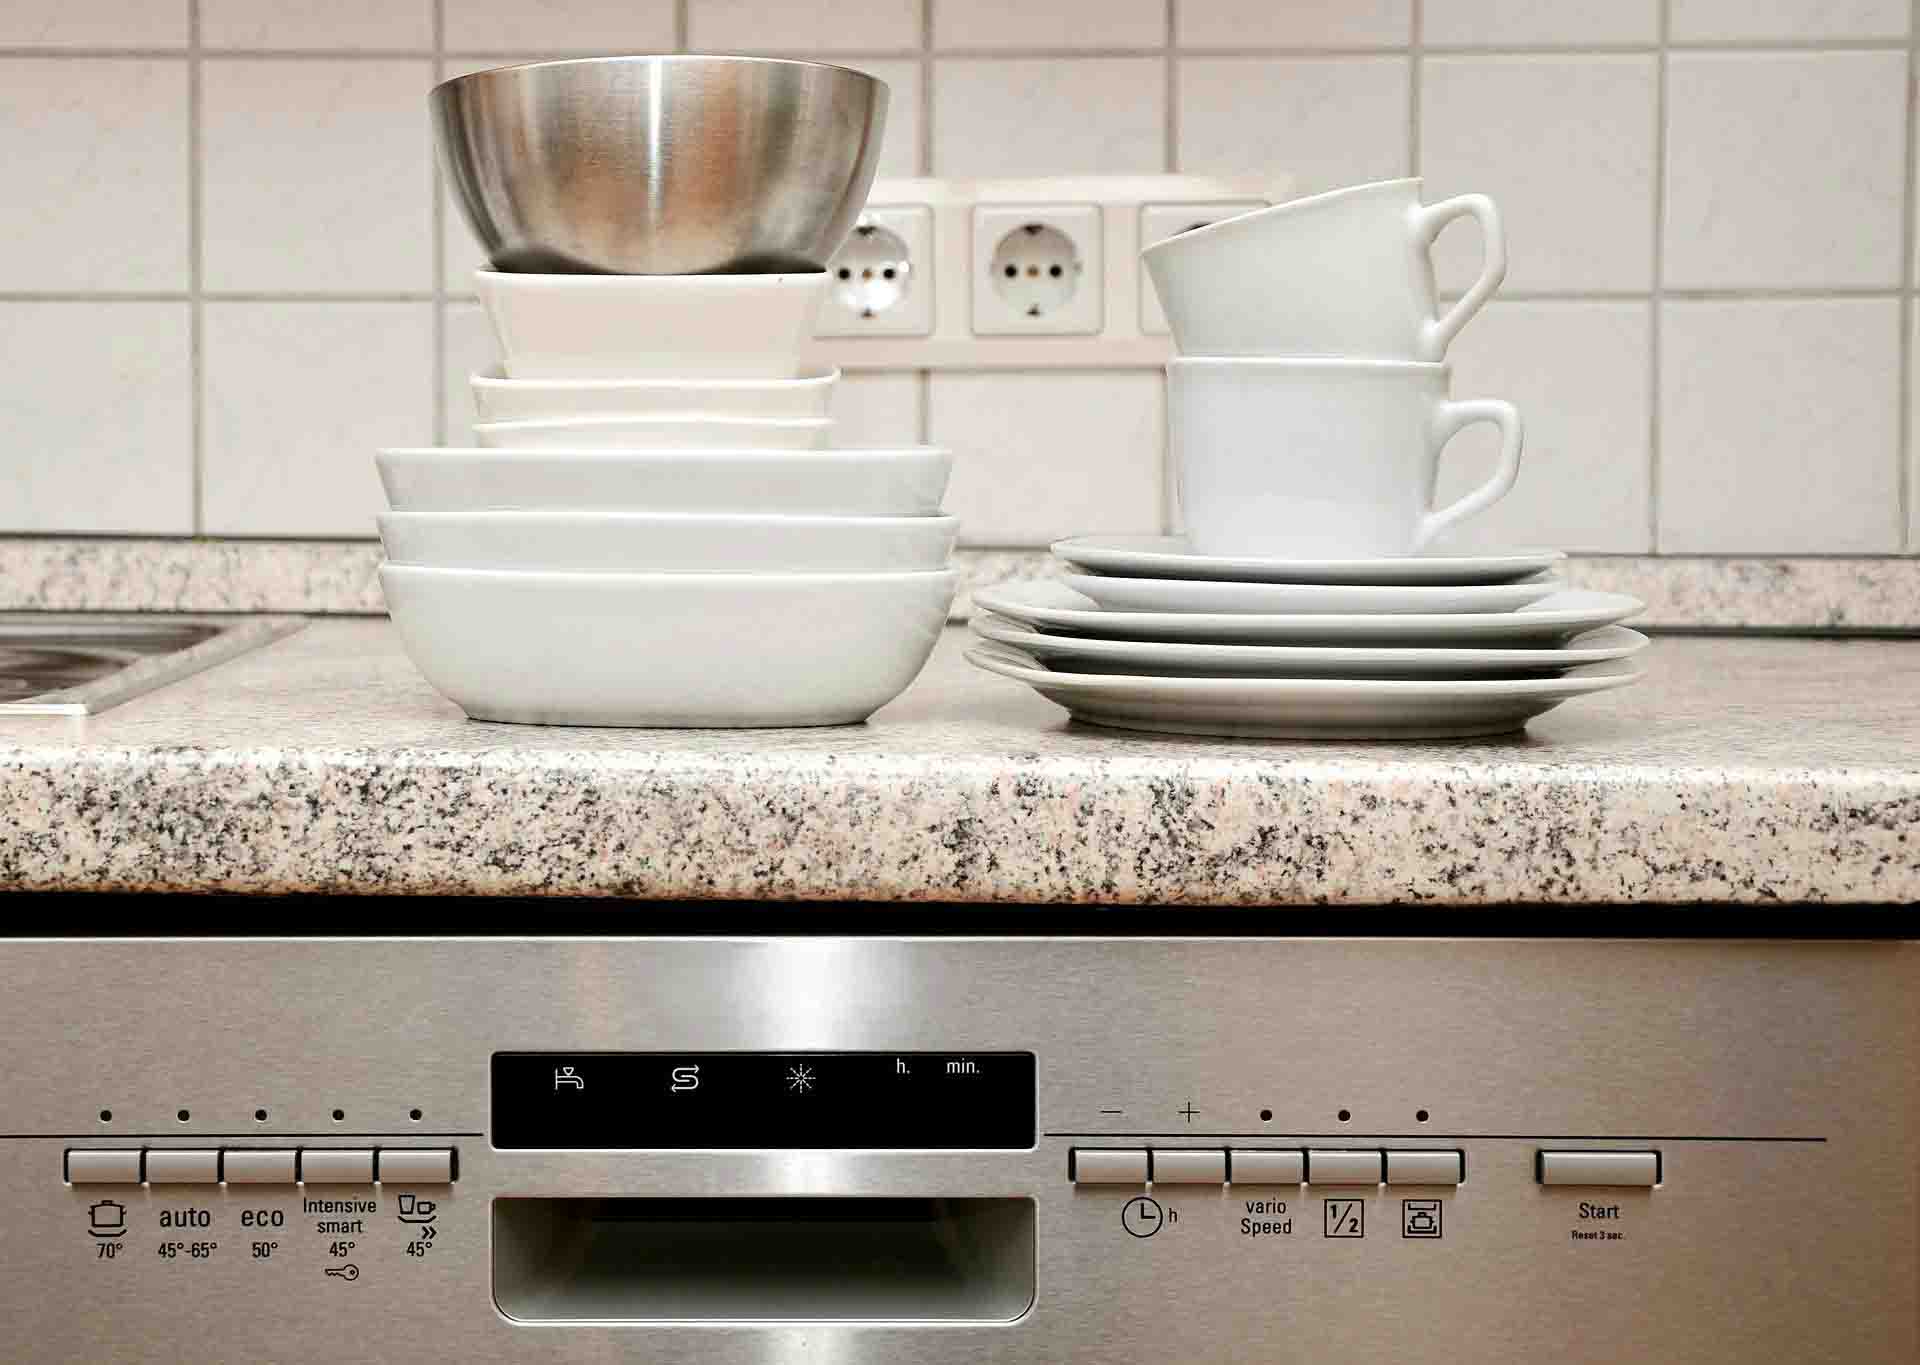 Las cocinas son una fuente de microbios / Foto: Pixabay